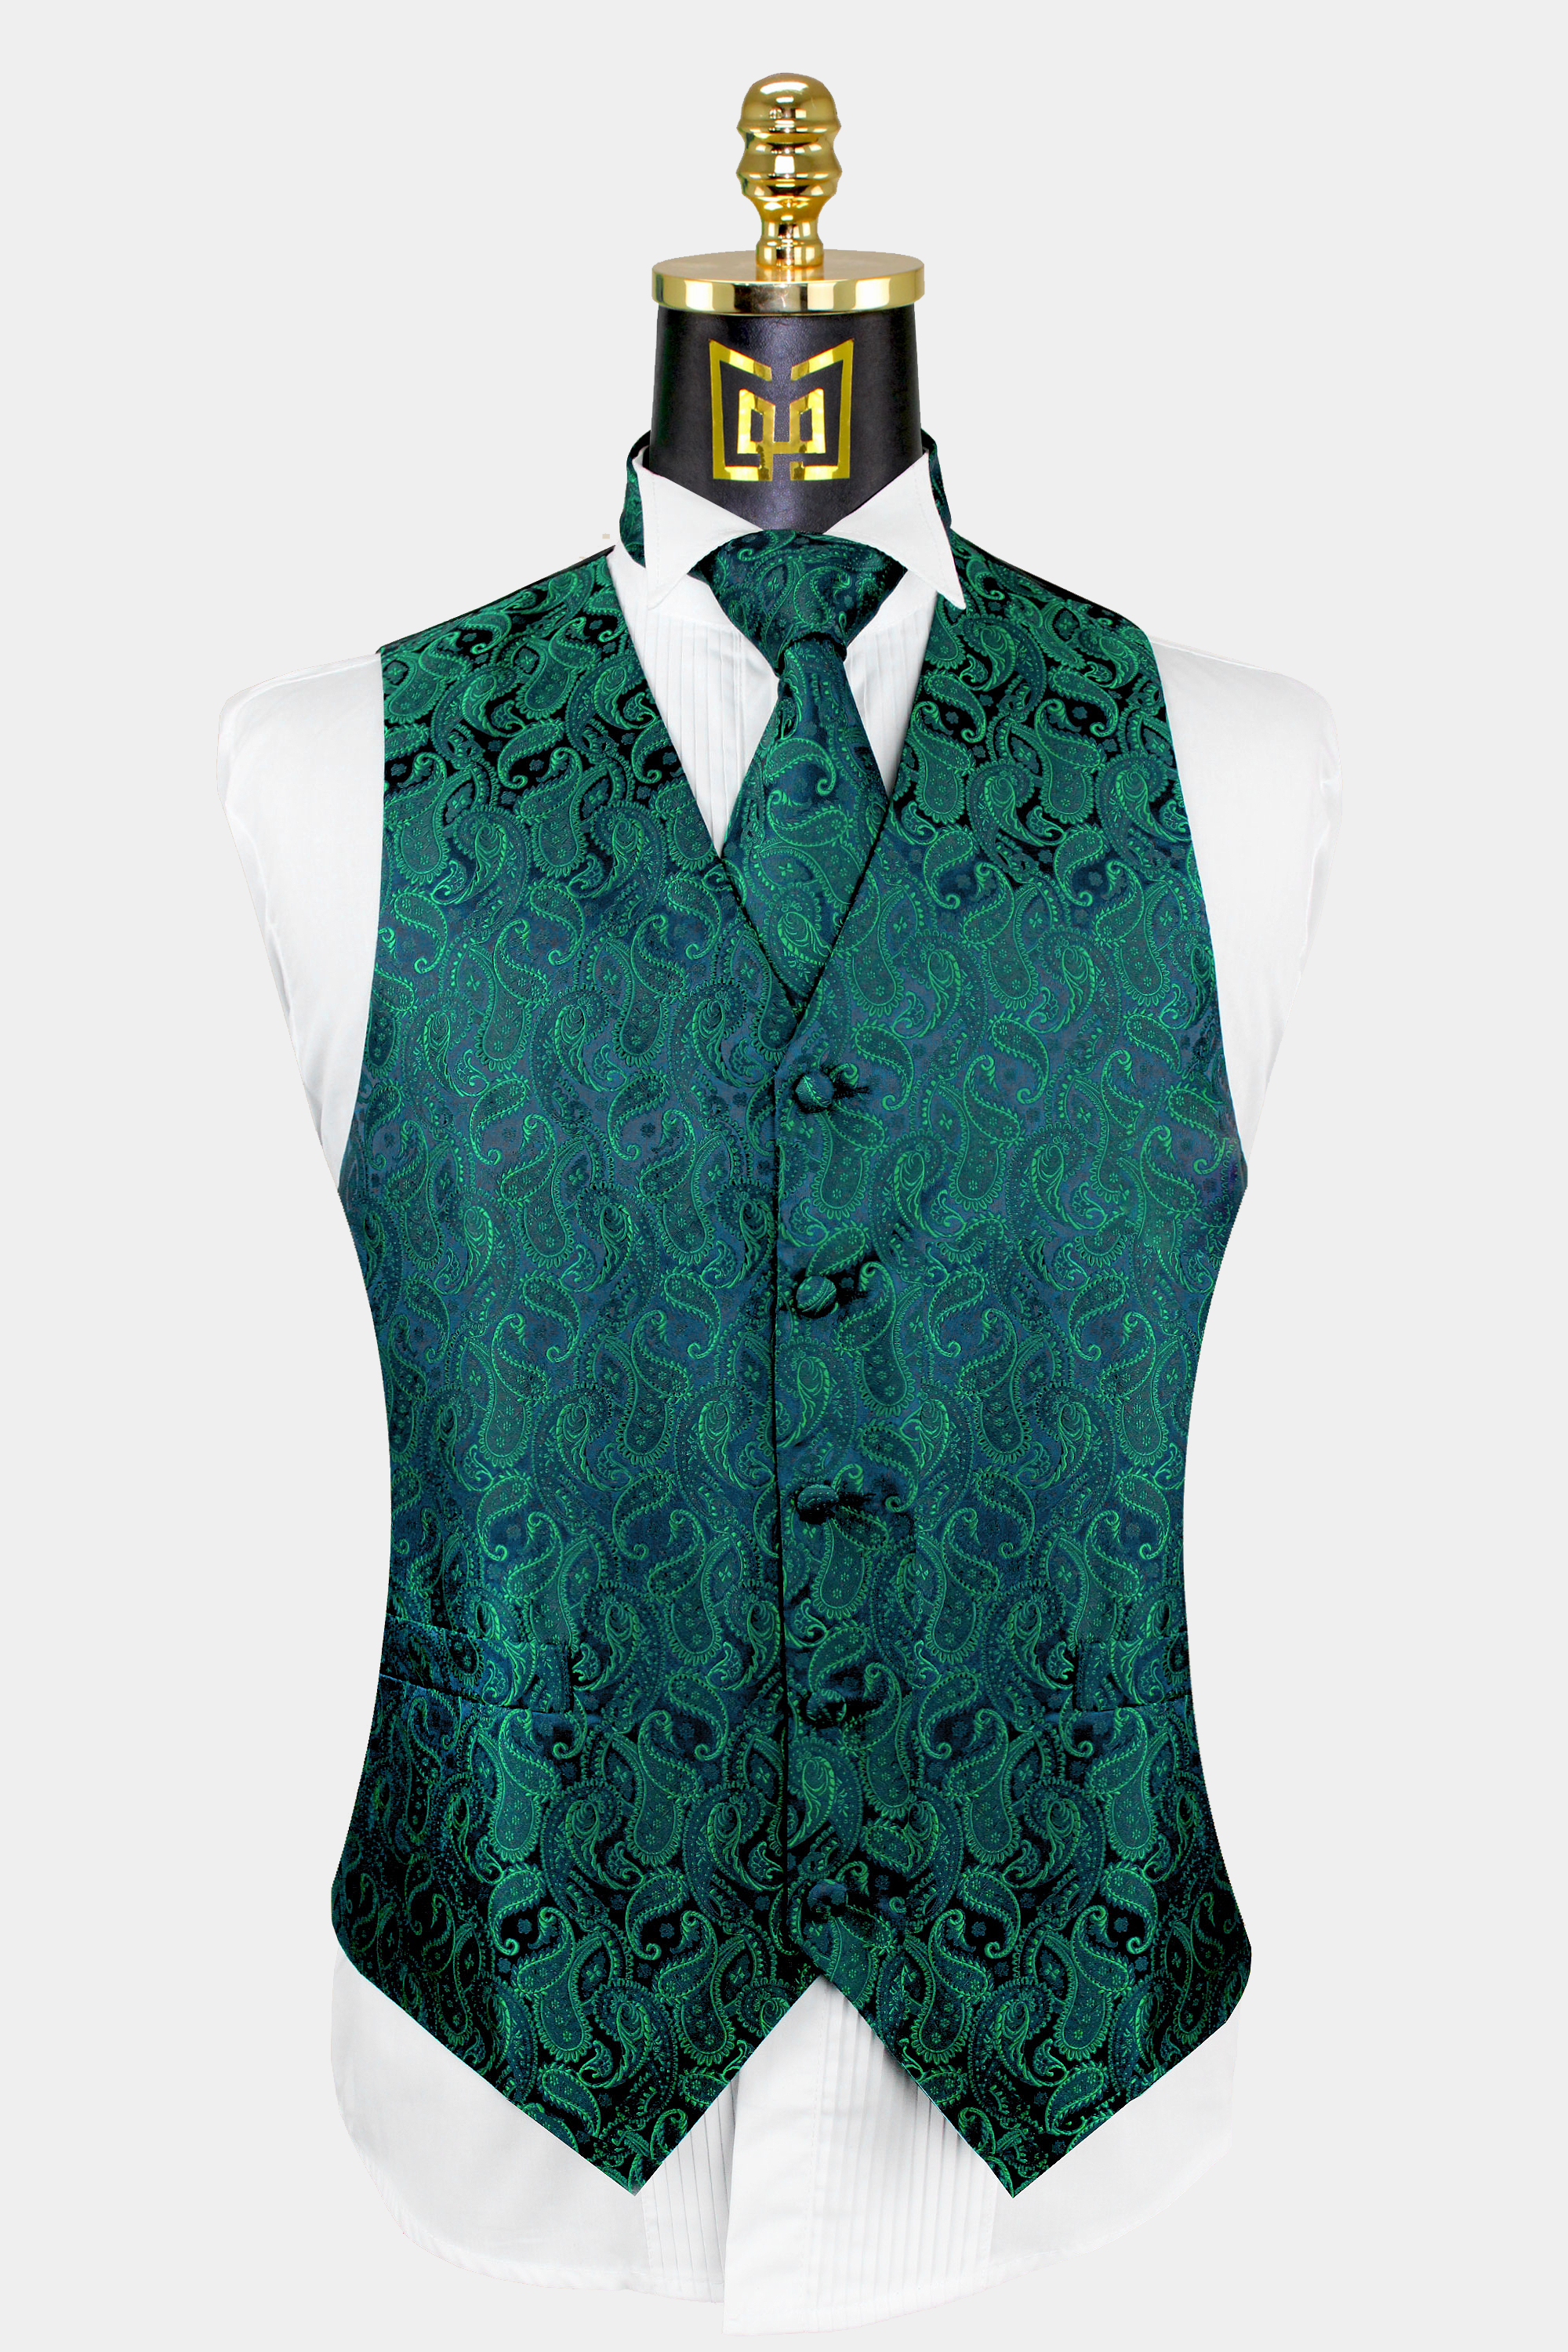 Mens-Emerald-Green-Paisley-Vest-and-Tie-Set-Groom-Wedding-Tuxedo-Vest-from-Gentlemansguru.com